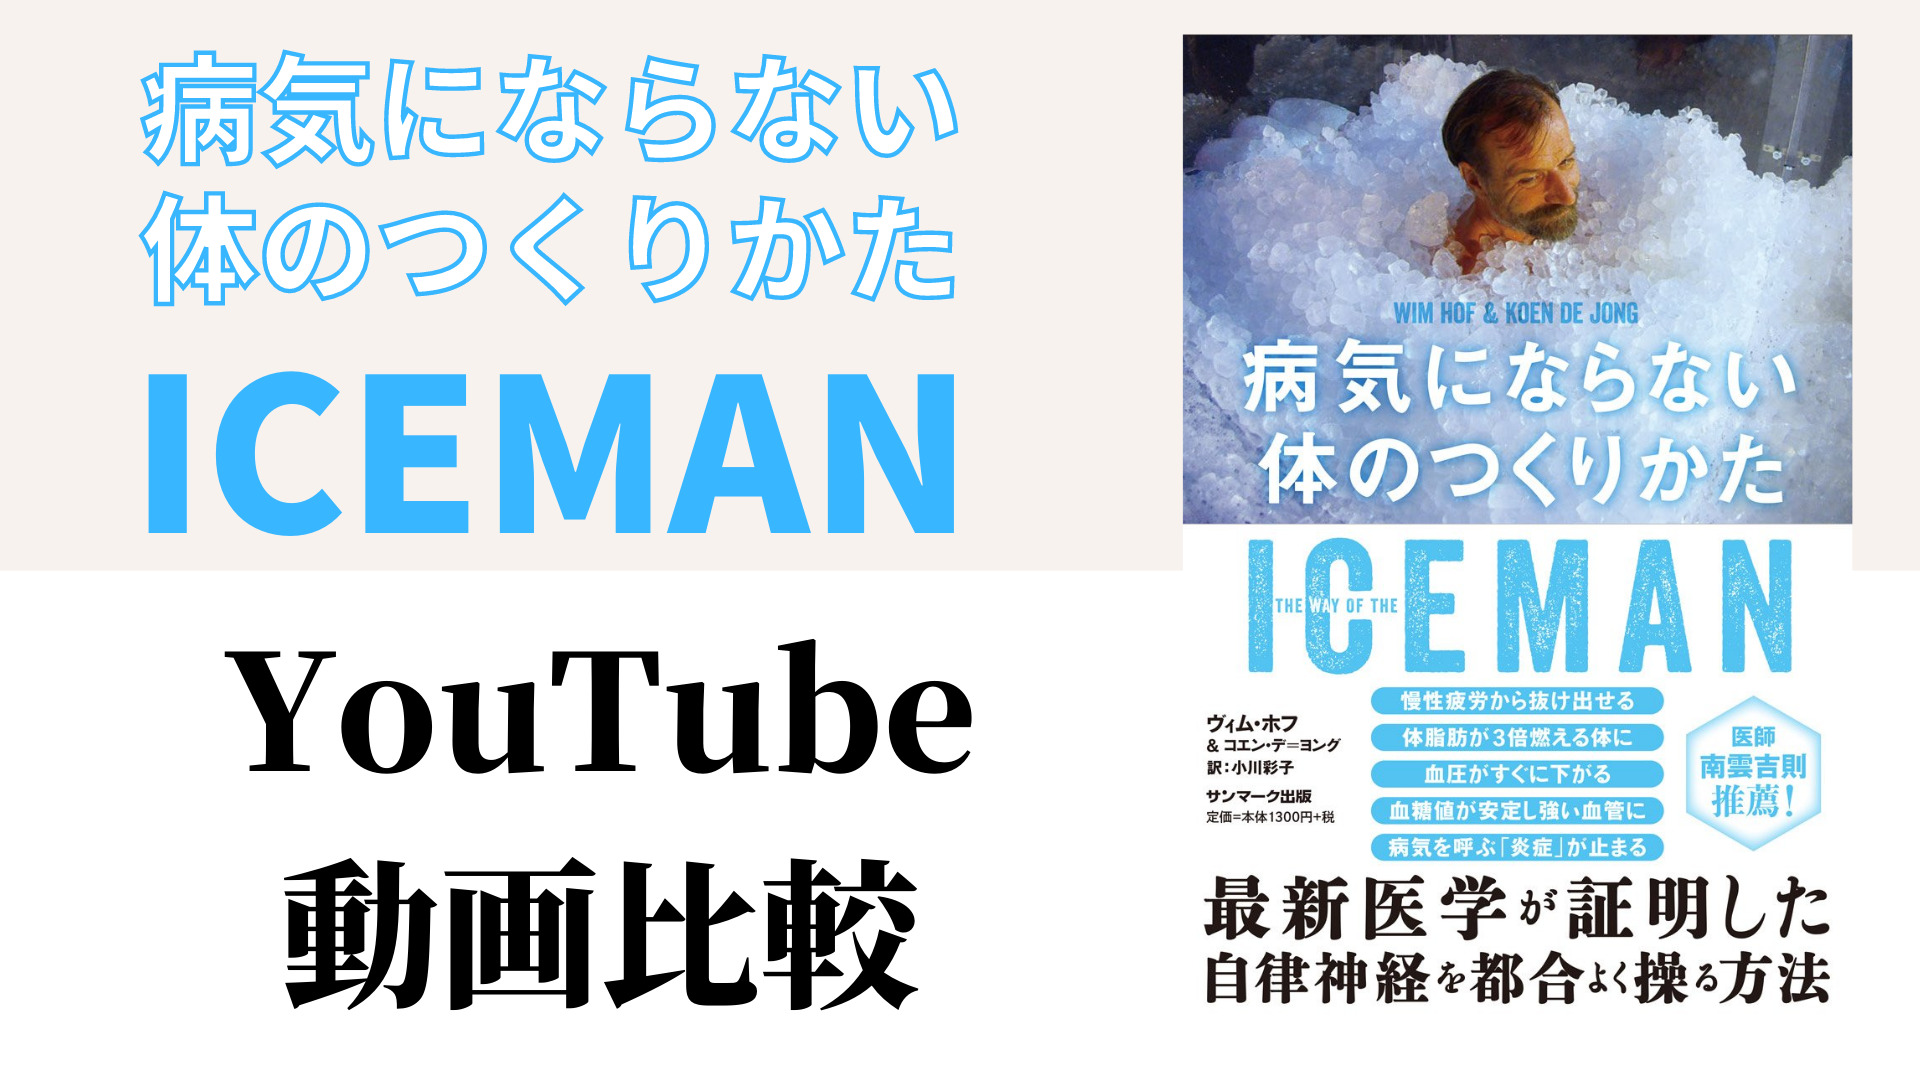 ICEMAN 病気にならない体のつくりかた YouTube動画比較